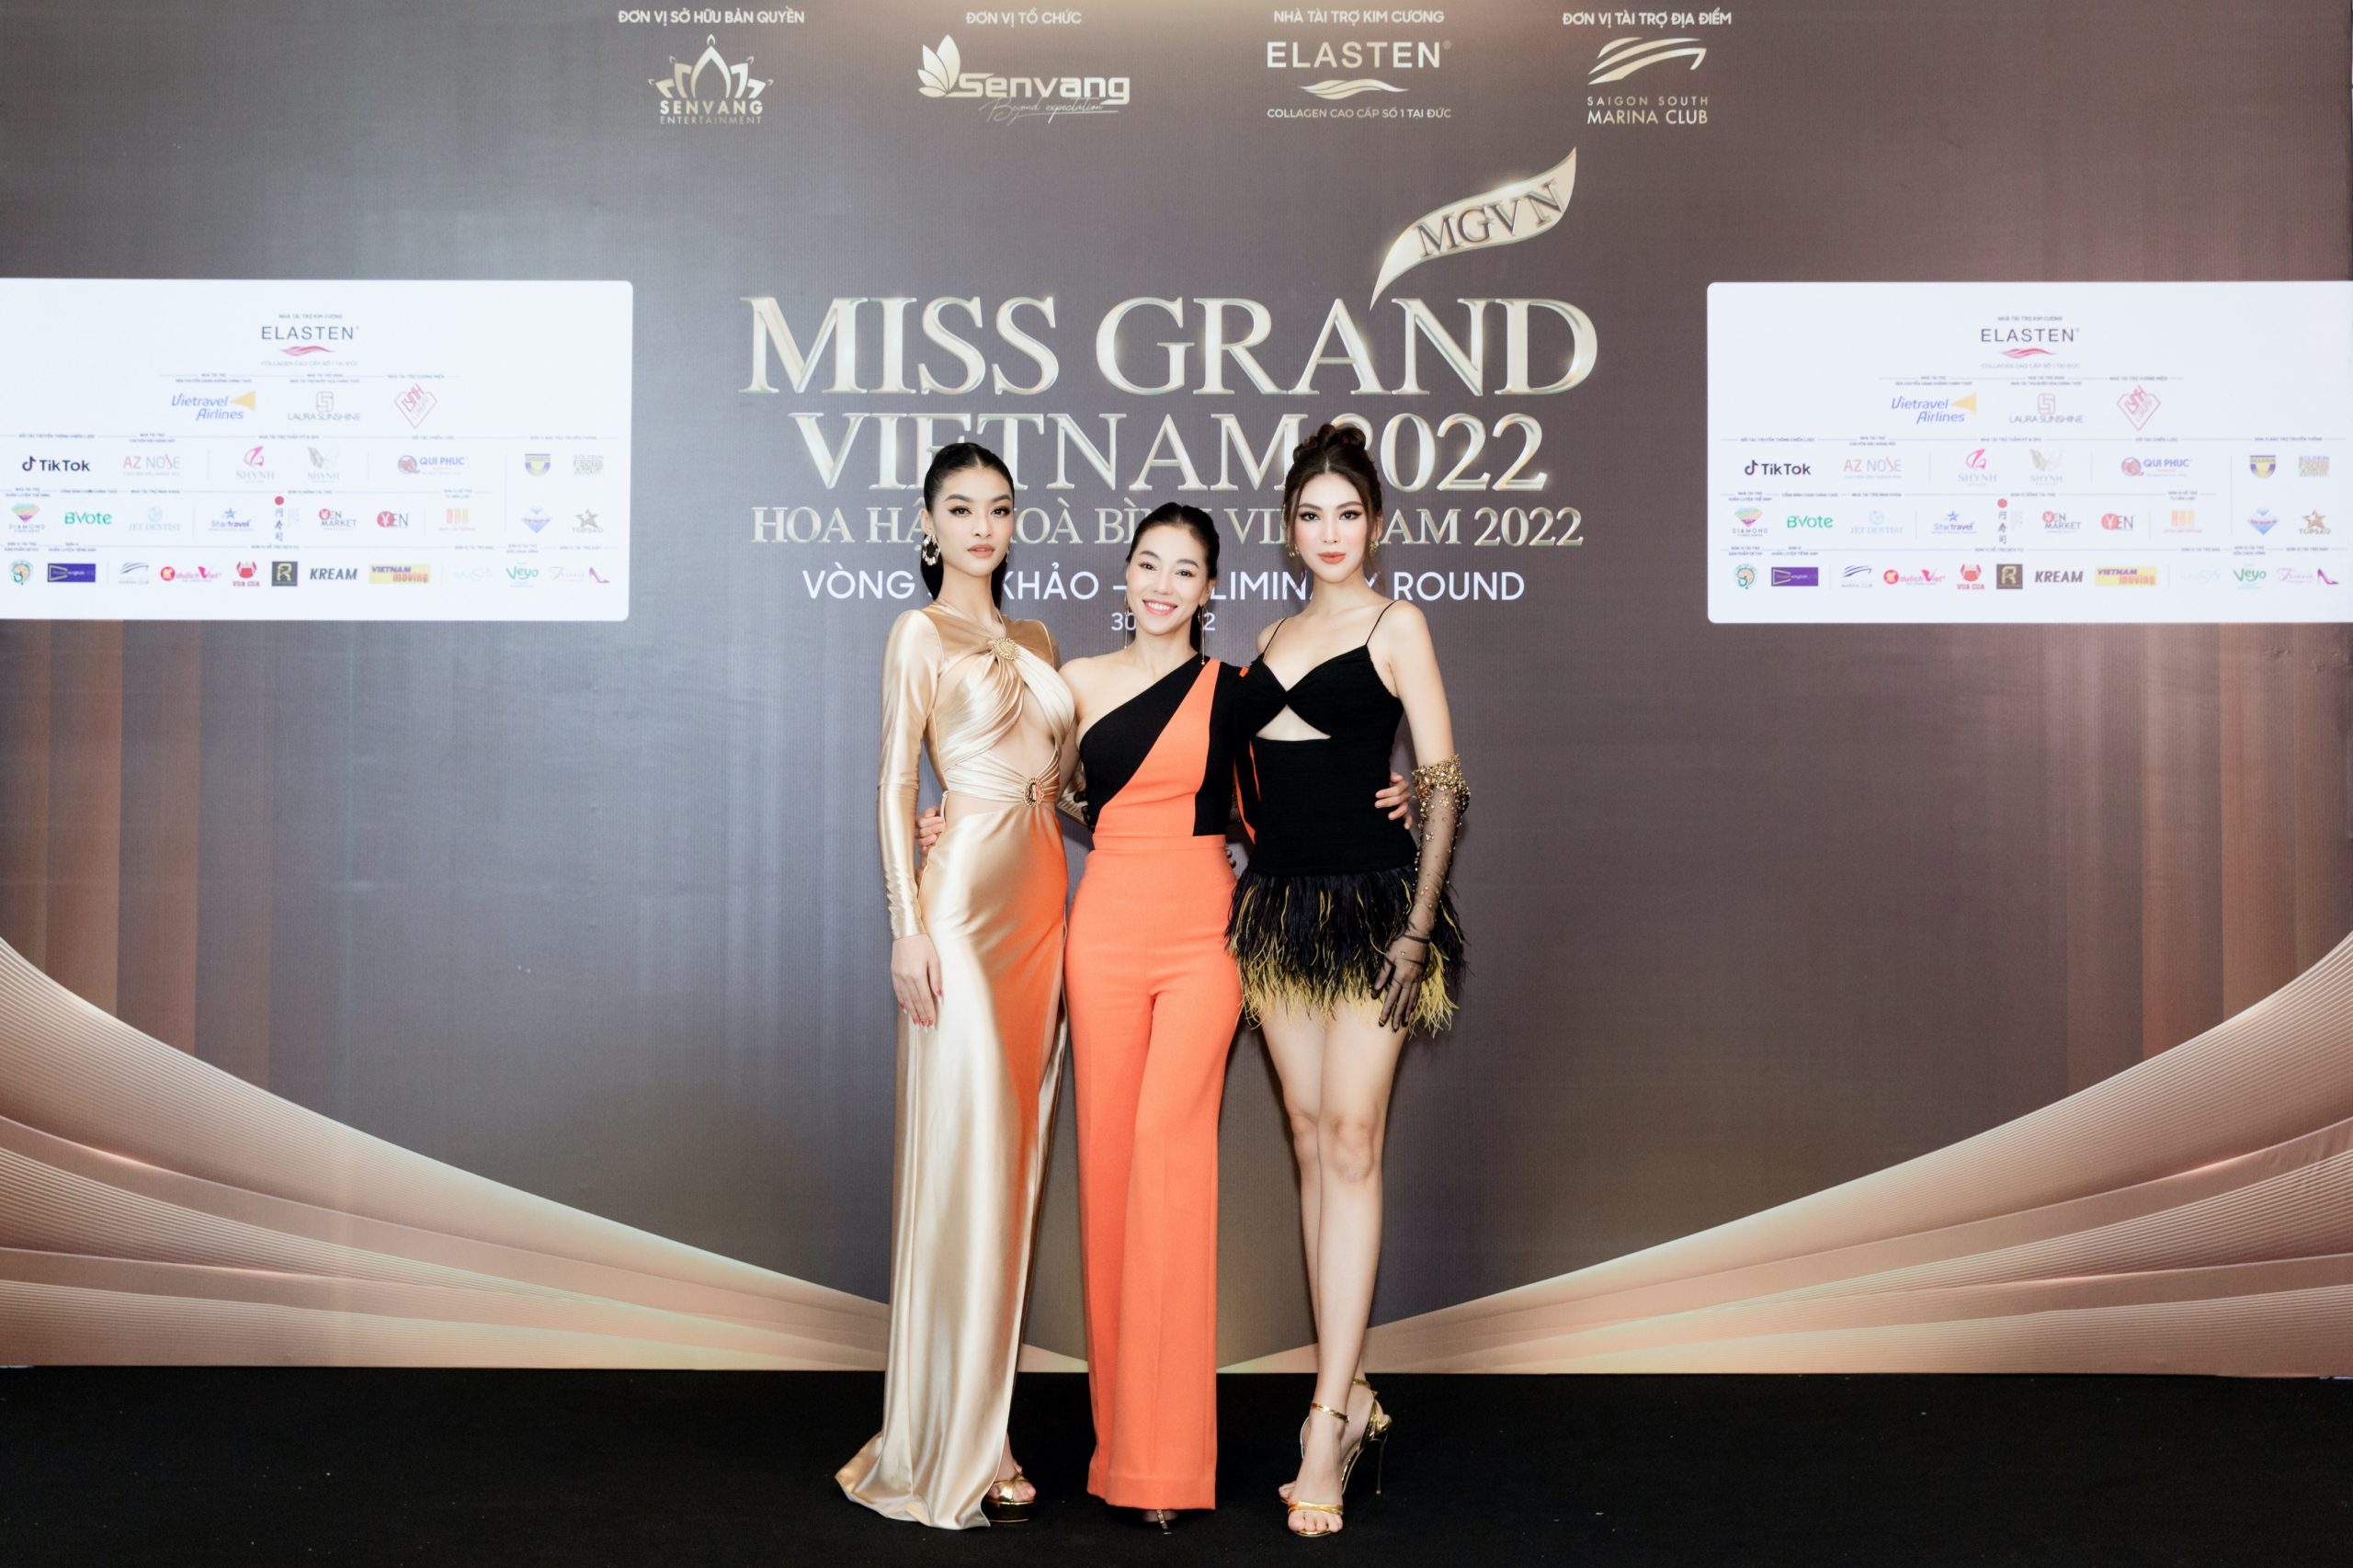 Dàn người đẹp của Miss Grand Vietnam 2022 đọ sắc tại Saigon South Marina Club￼